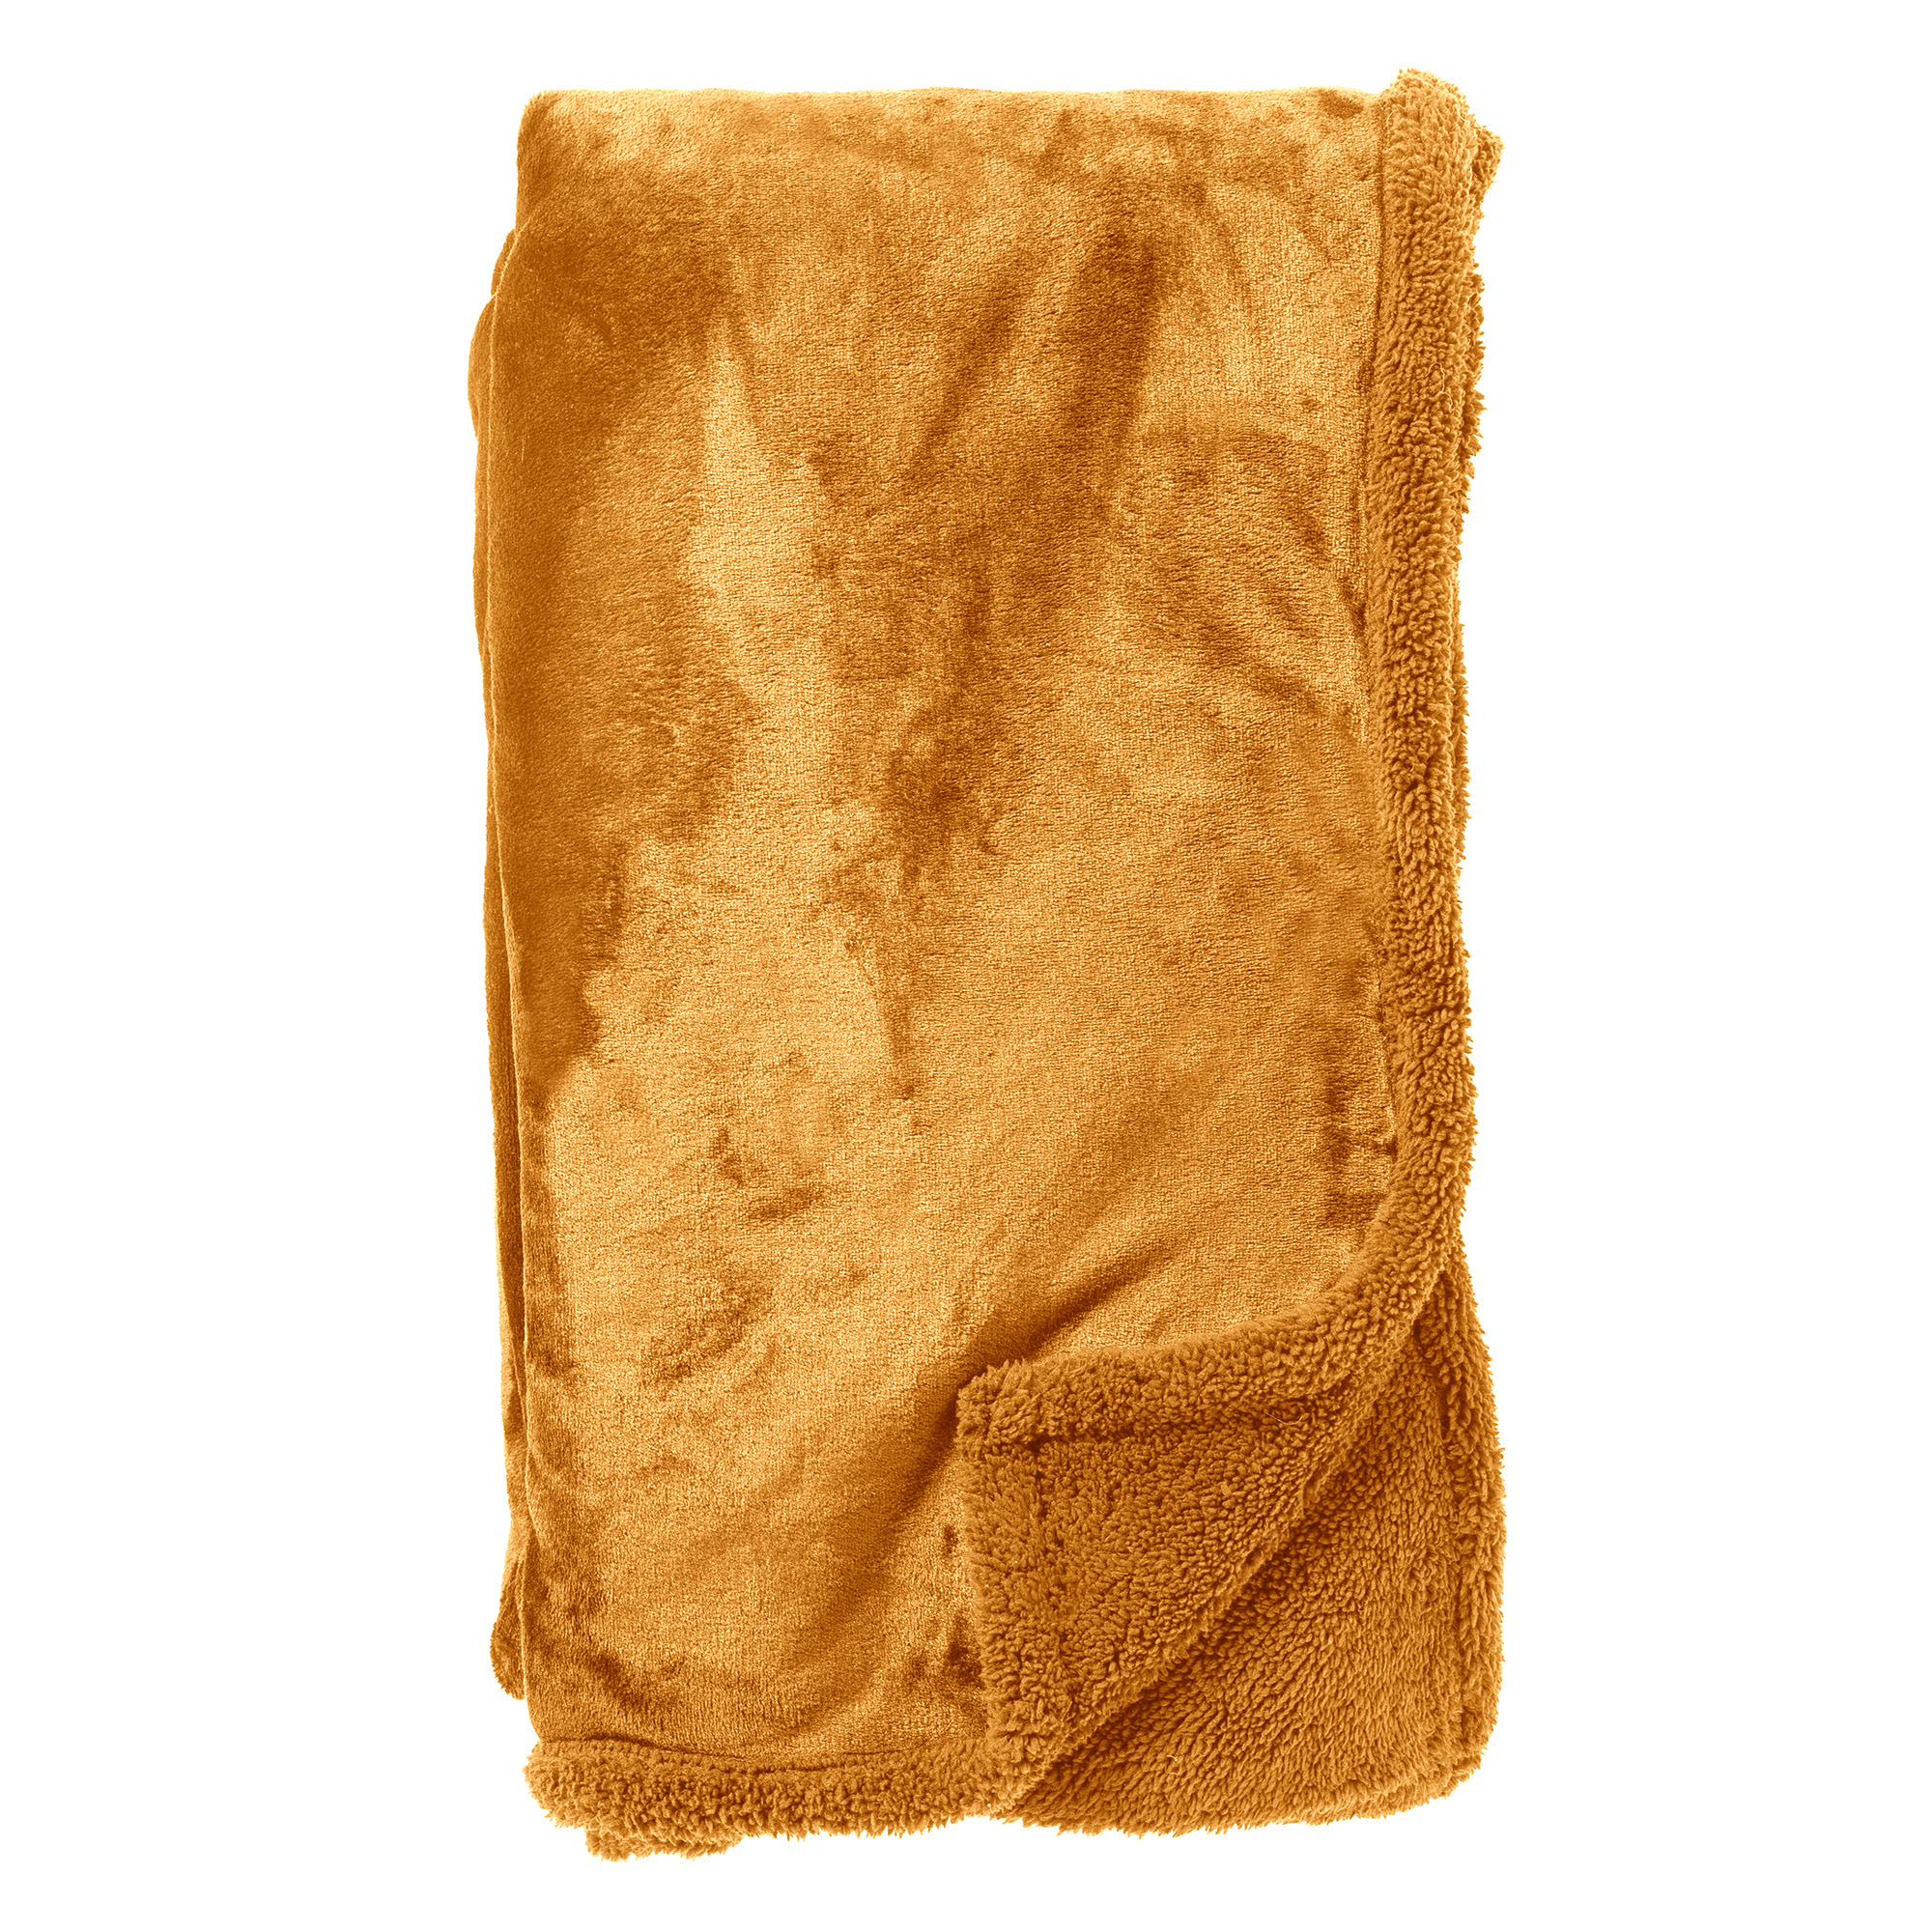 STANLEY - Plaid 150x200 cm - fleece deken met teddy en fleece - Golden Glow - geel